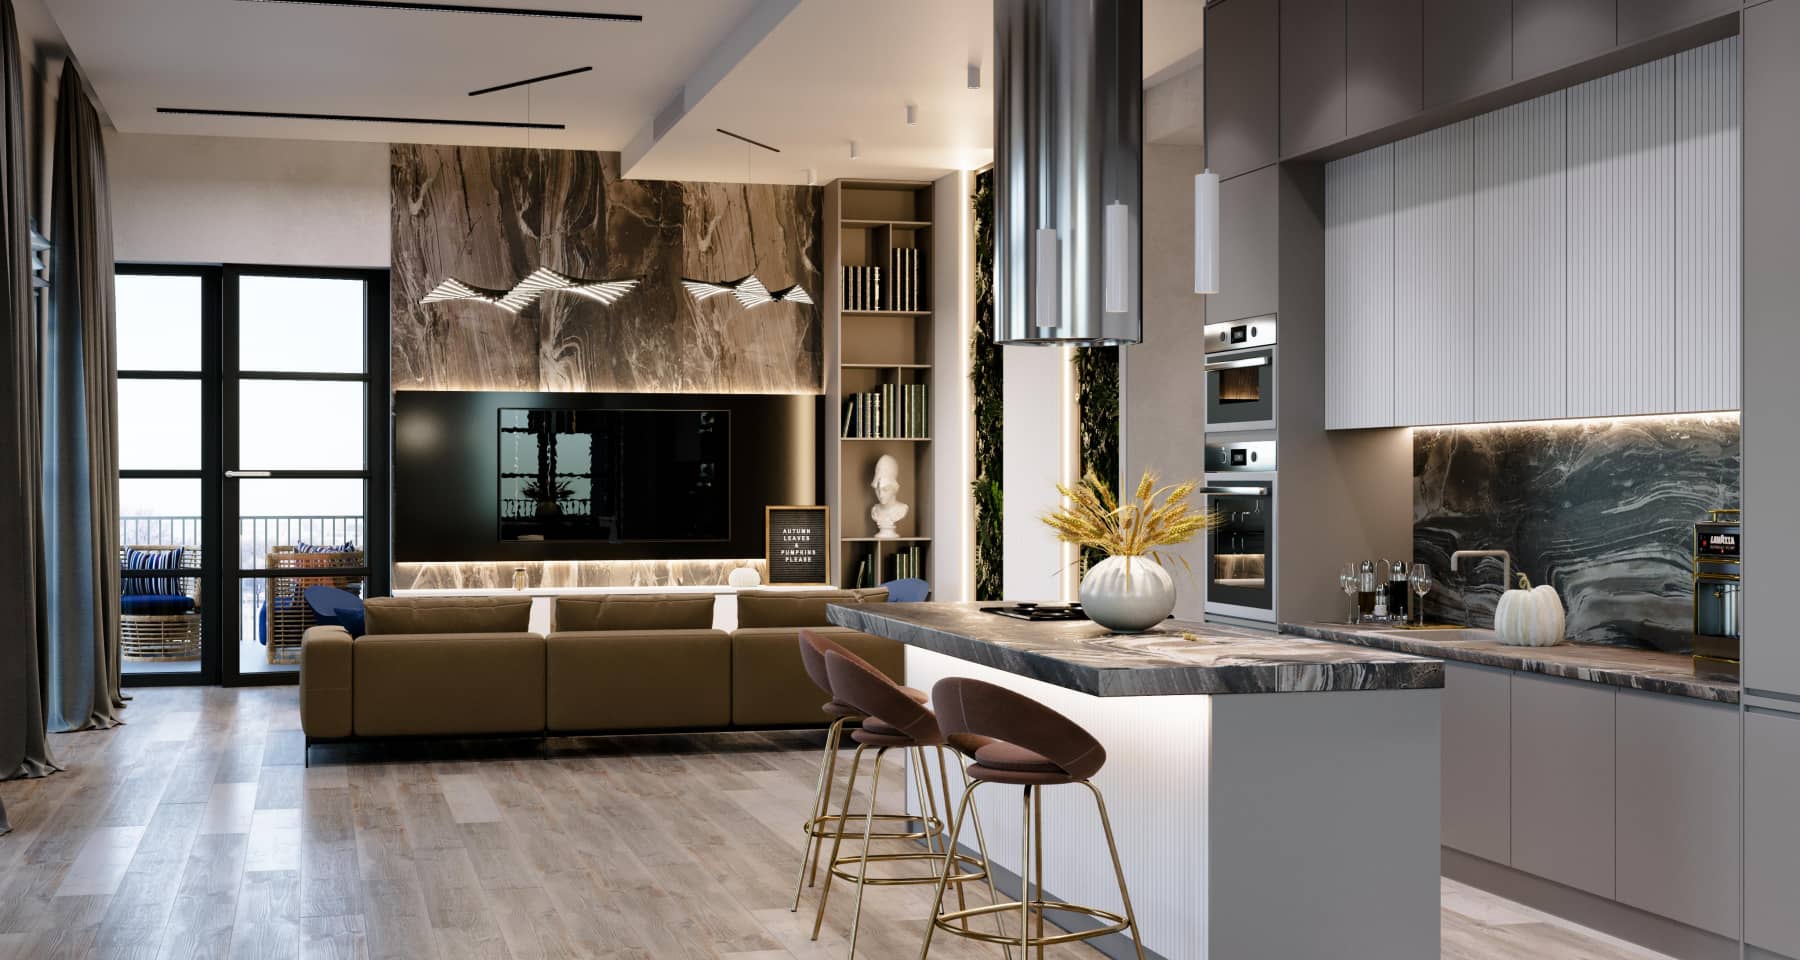 Кухня-гостиная 31 кв.м в современном стиле со скандинавскими элементами